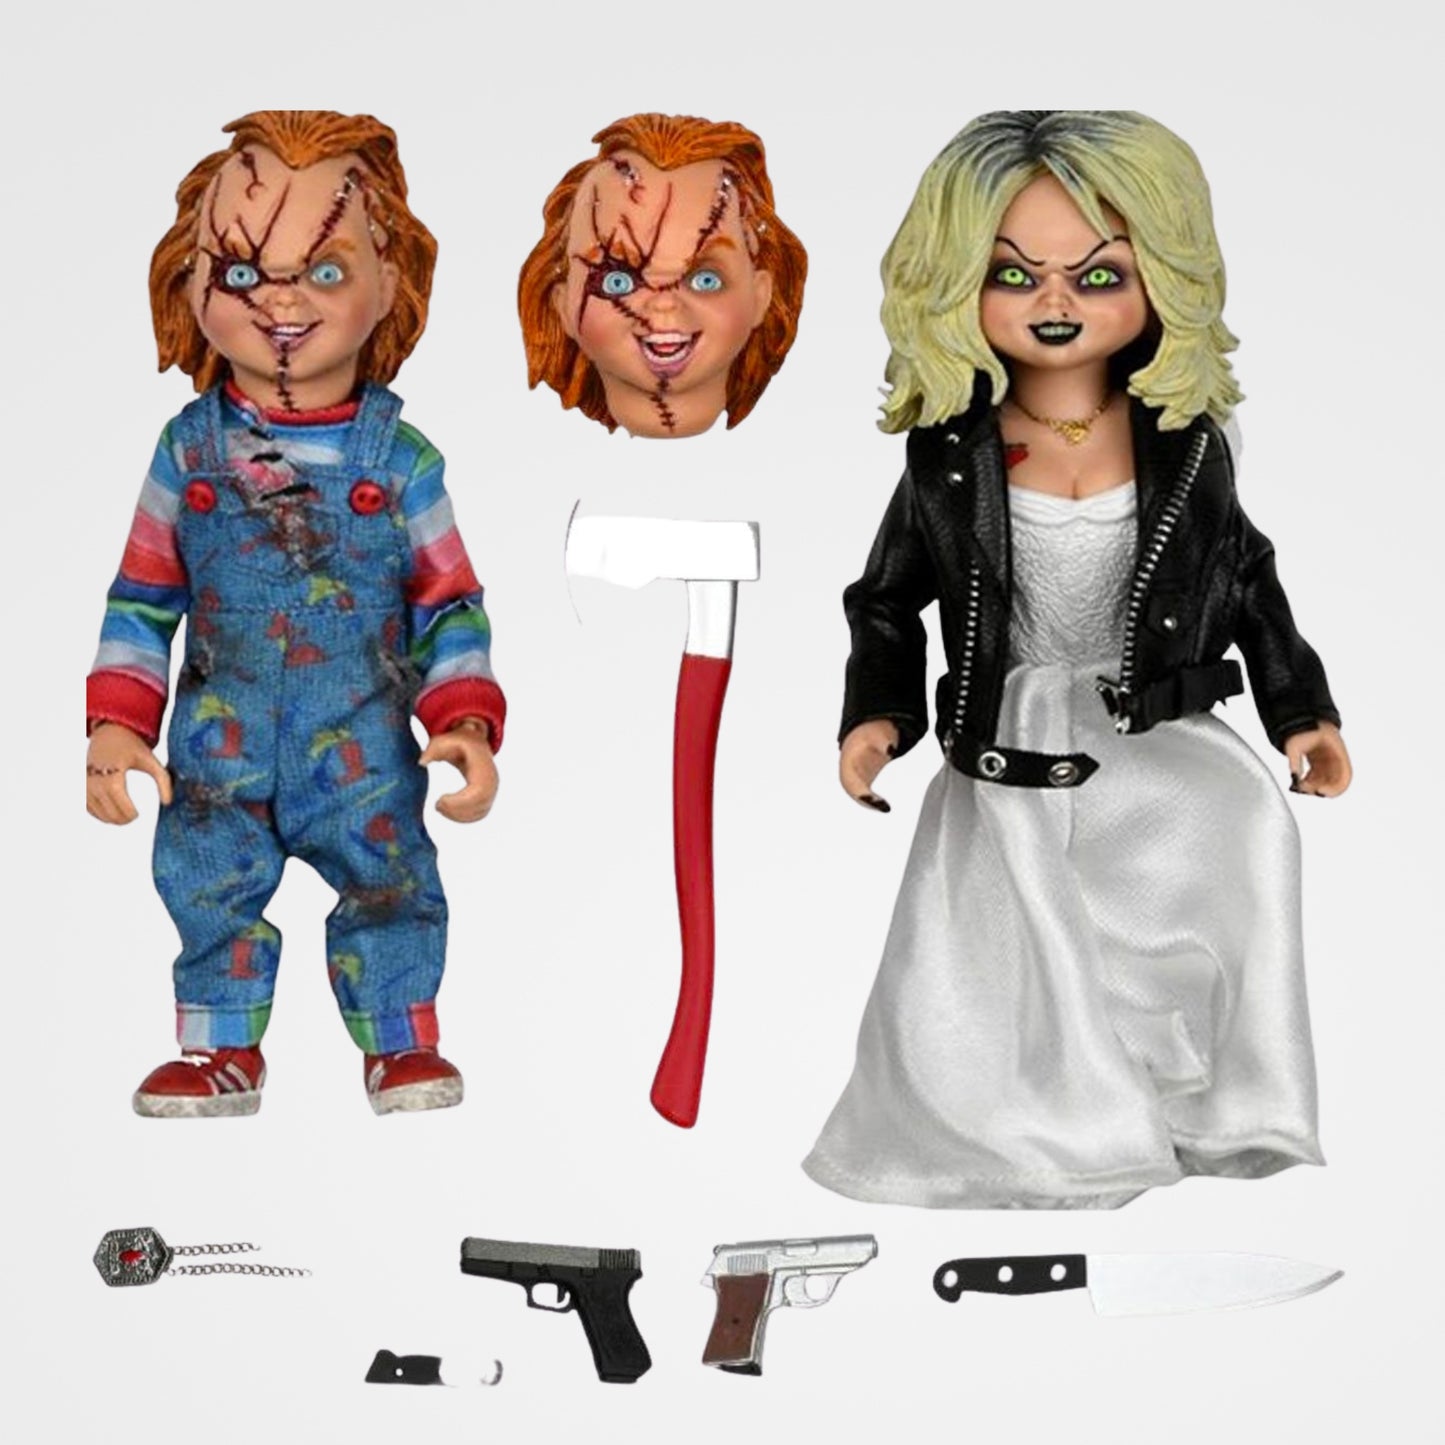 Chucky and Tiffany (Bride of Chucky) 5.5